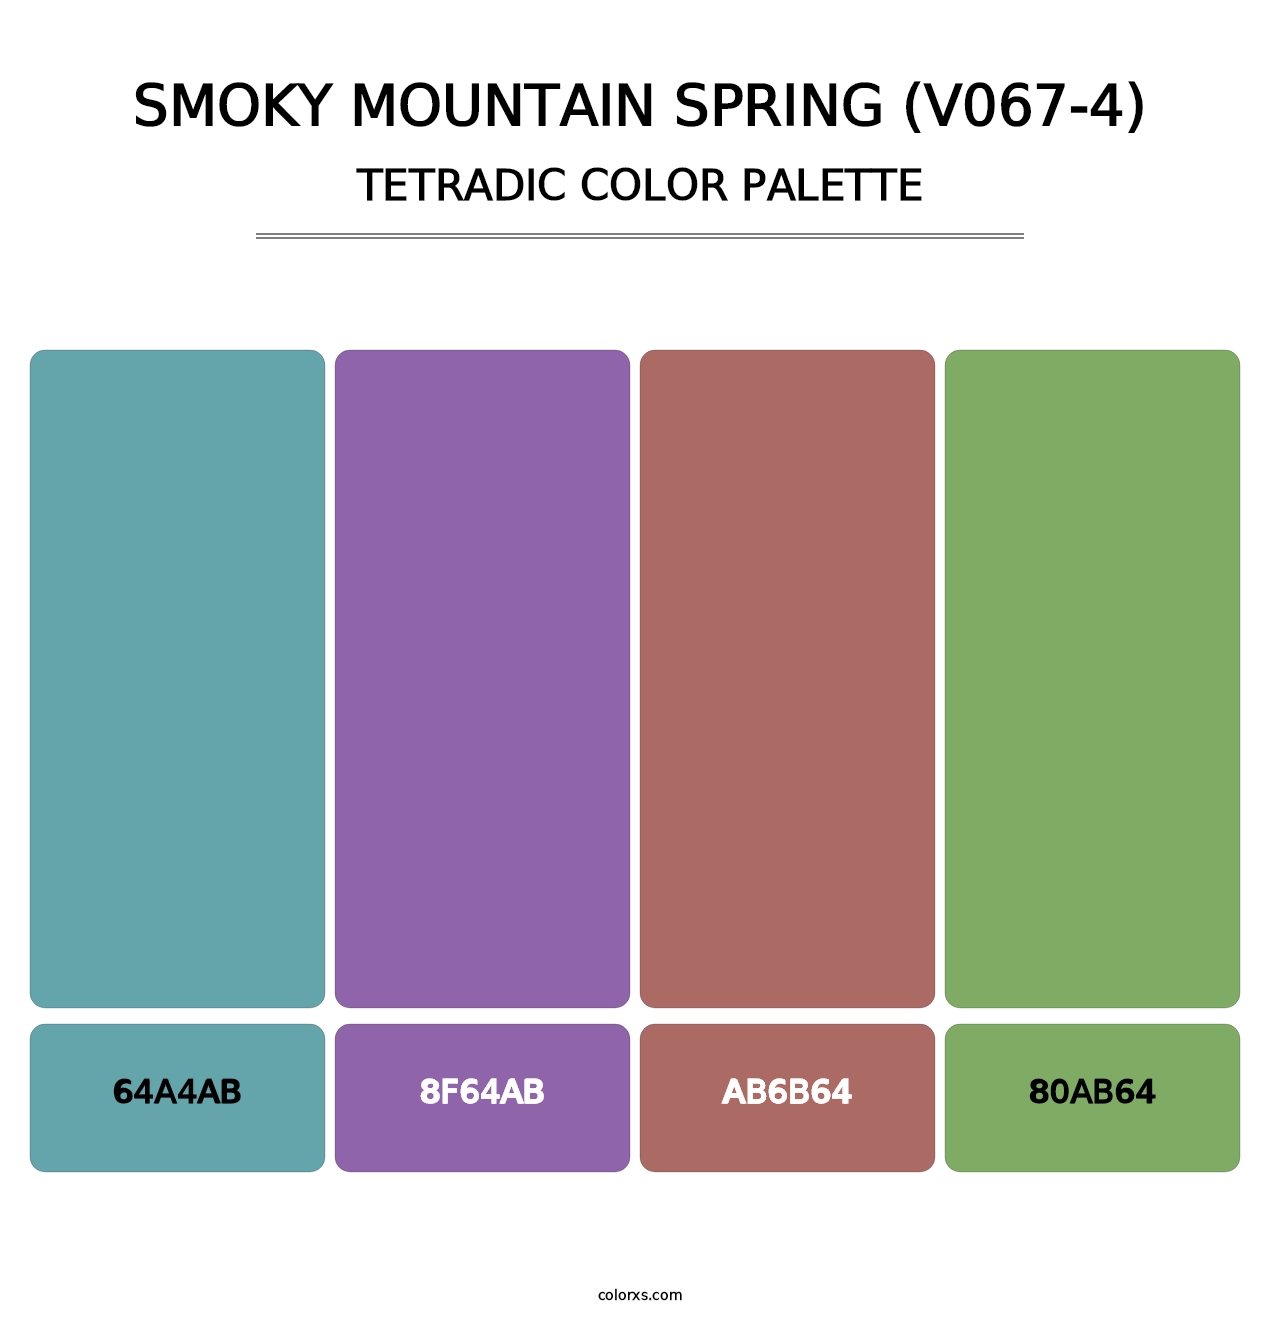 Smoky Mountain Spring (V067-4) - Tetradic Color Palette